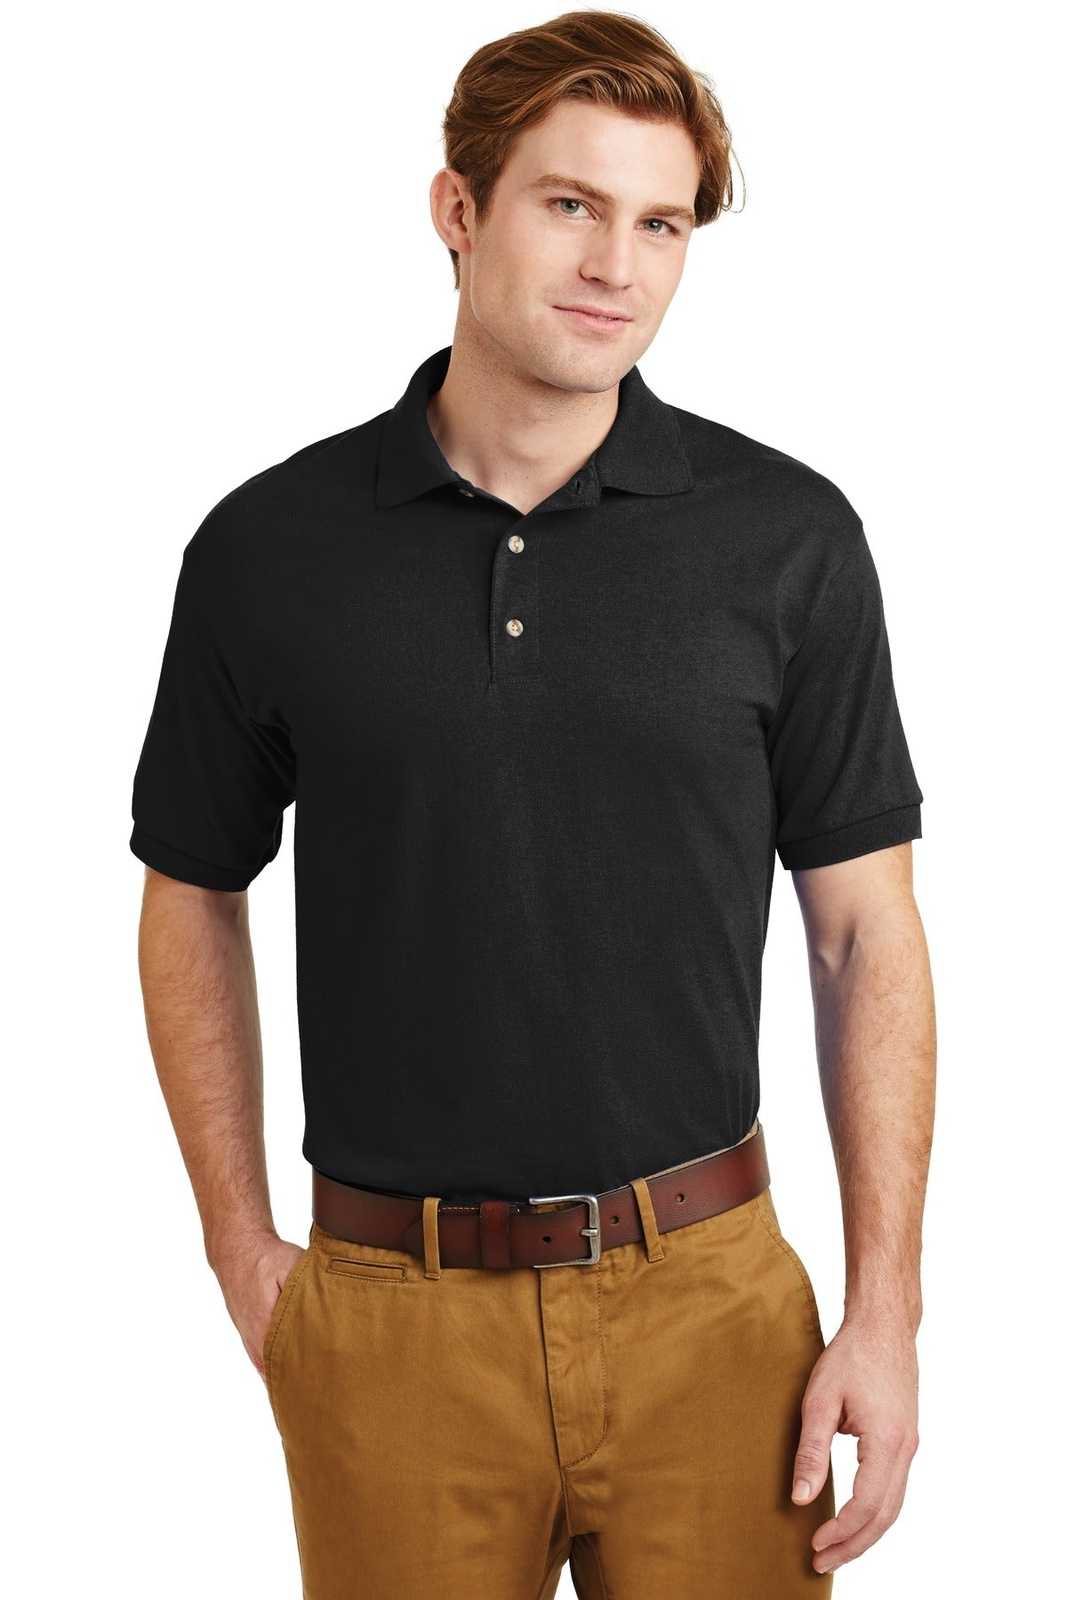 Gildan 8800 Dryblend 6-Ounce Jersey Knit Sport Shirt - Black - HIT a Double